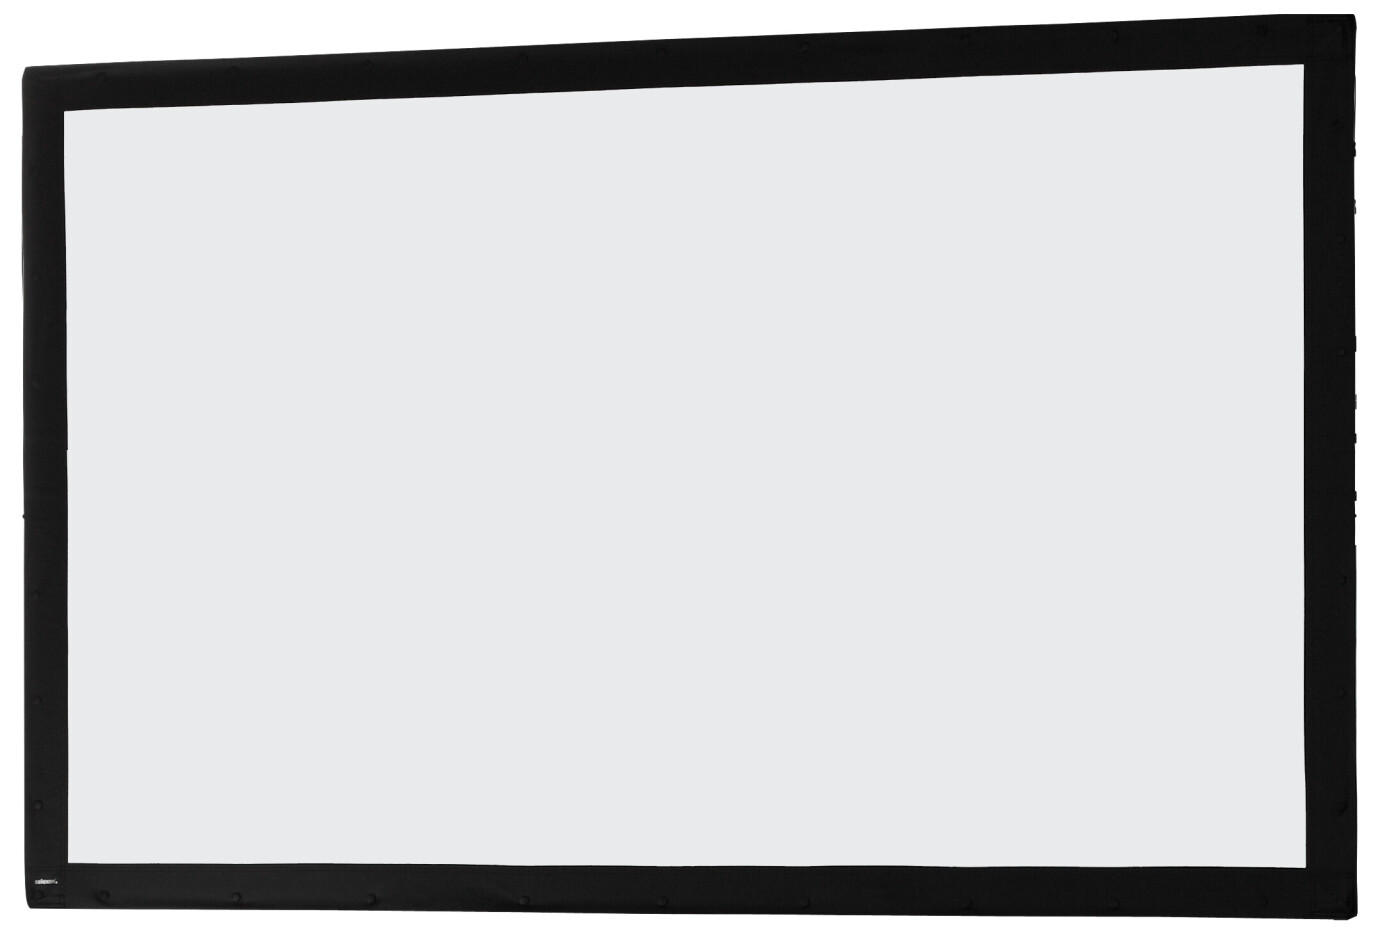 Toile 366 x 229 cm Ecran sur cadre celexon « Mobil Expert », projection avant